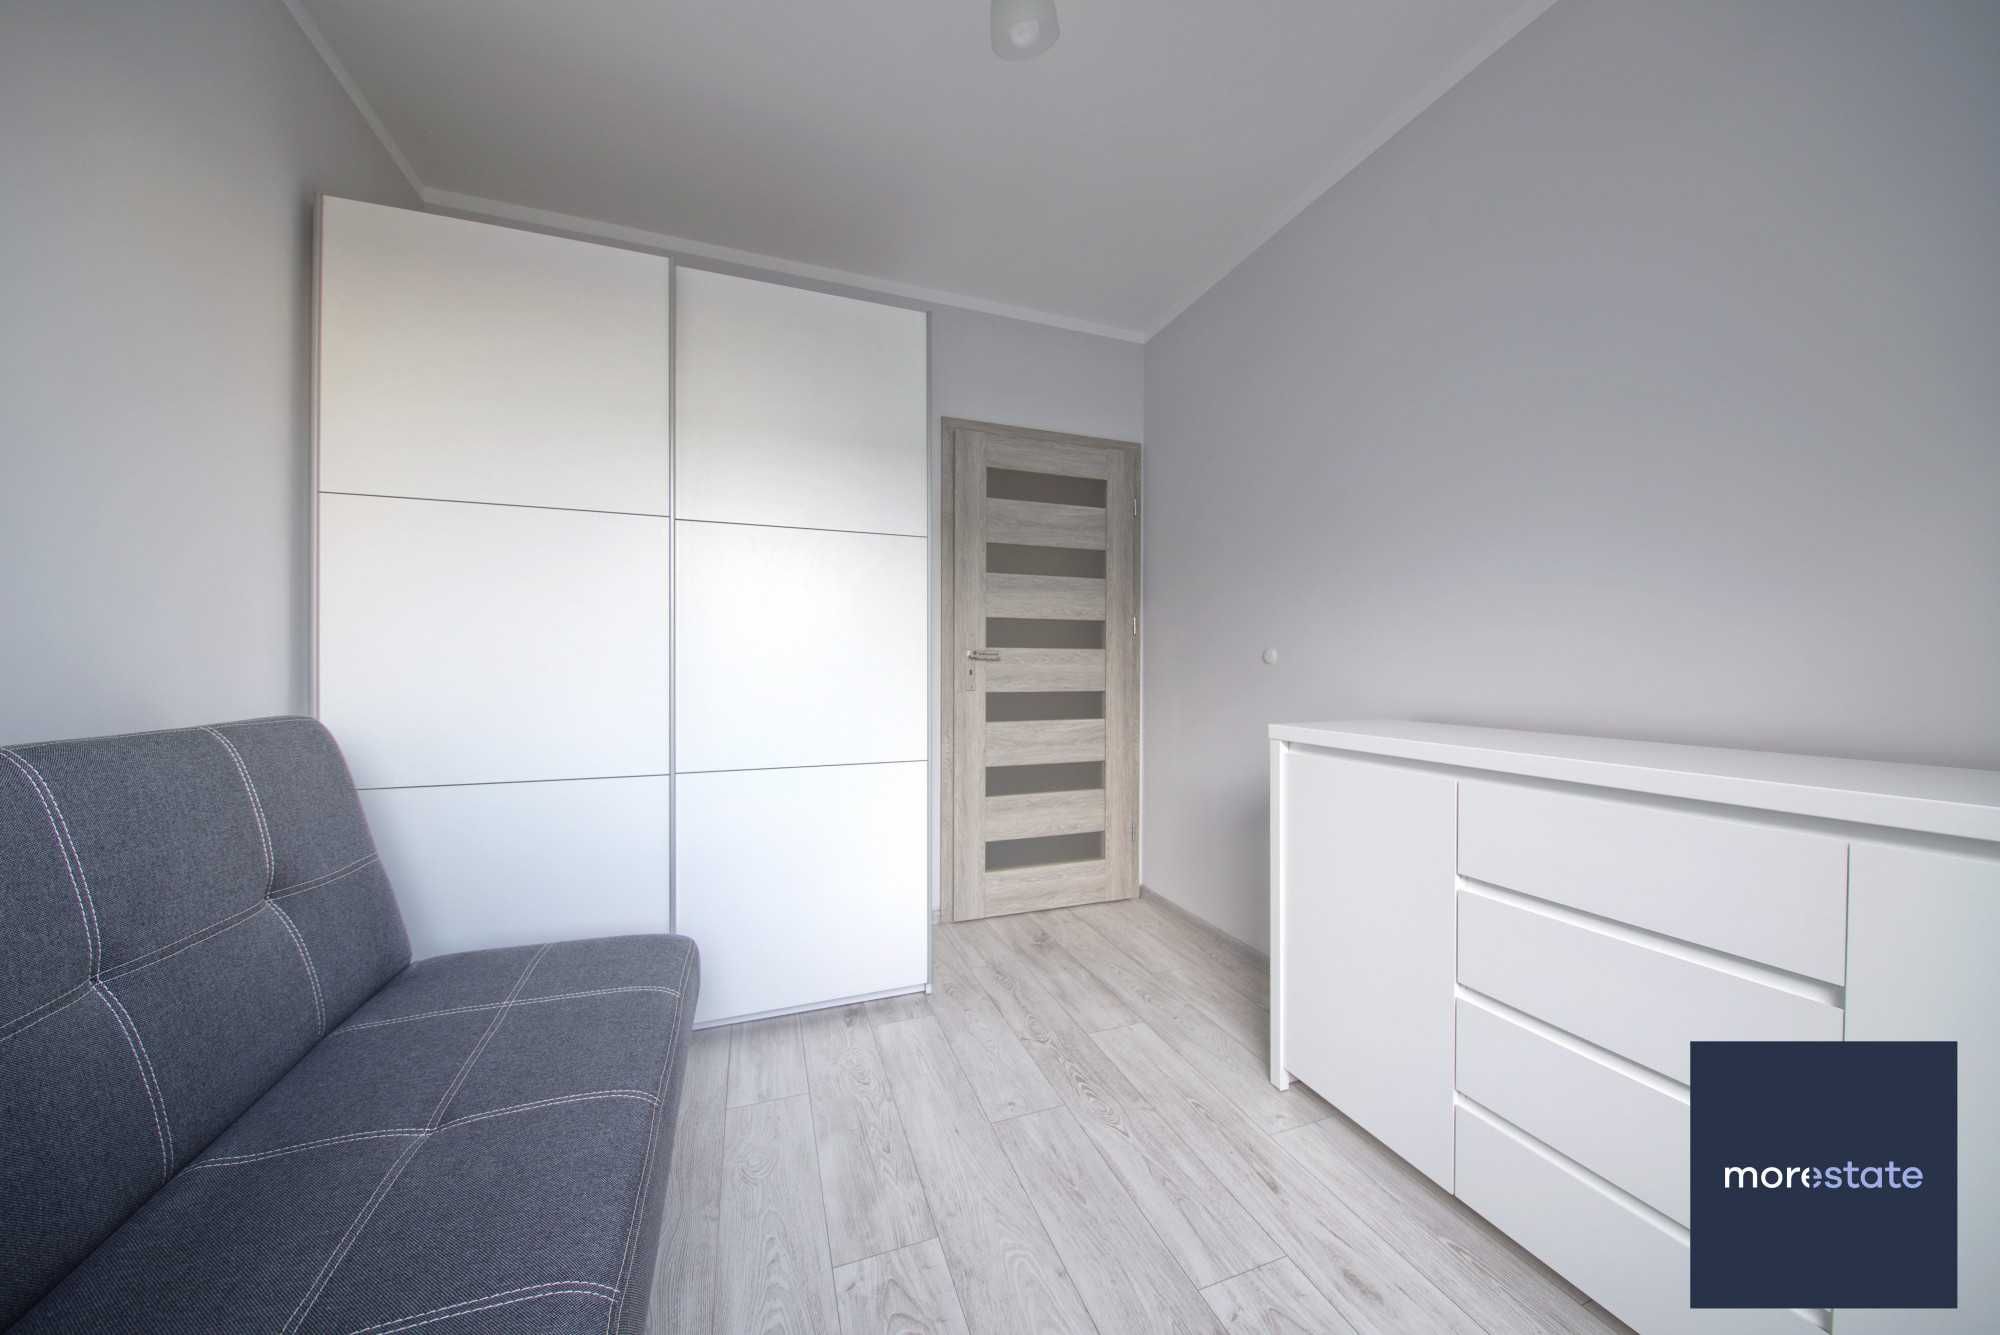 Dwa osobne pokoje | Ruczaj | mieszkanie umeblowane i wyposażone